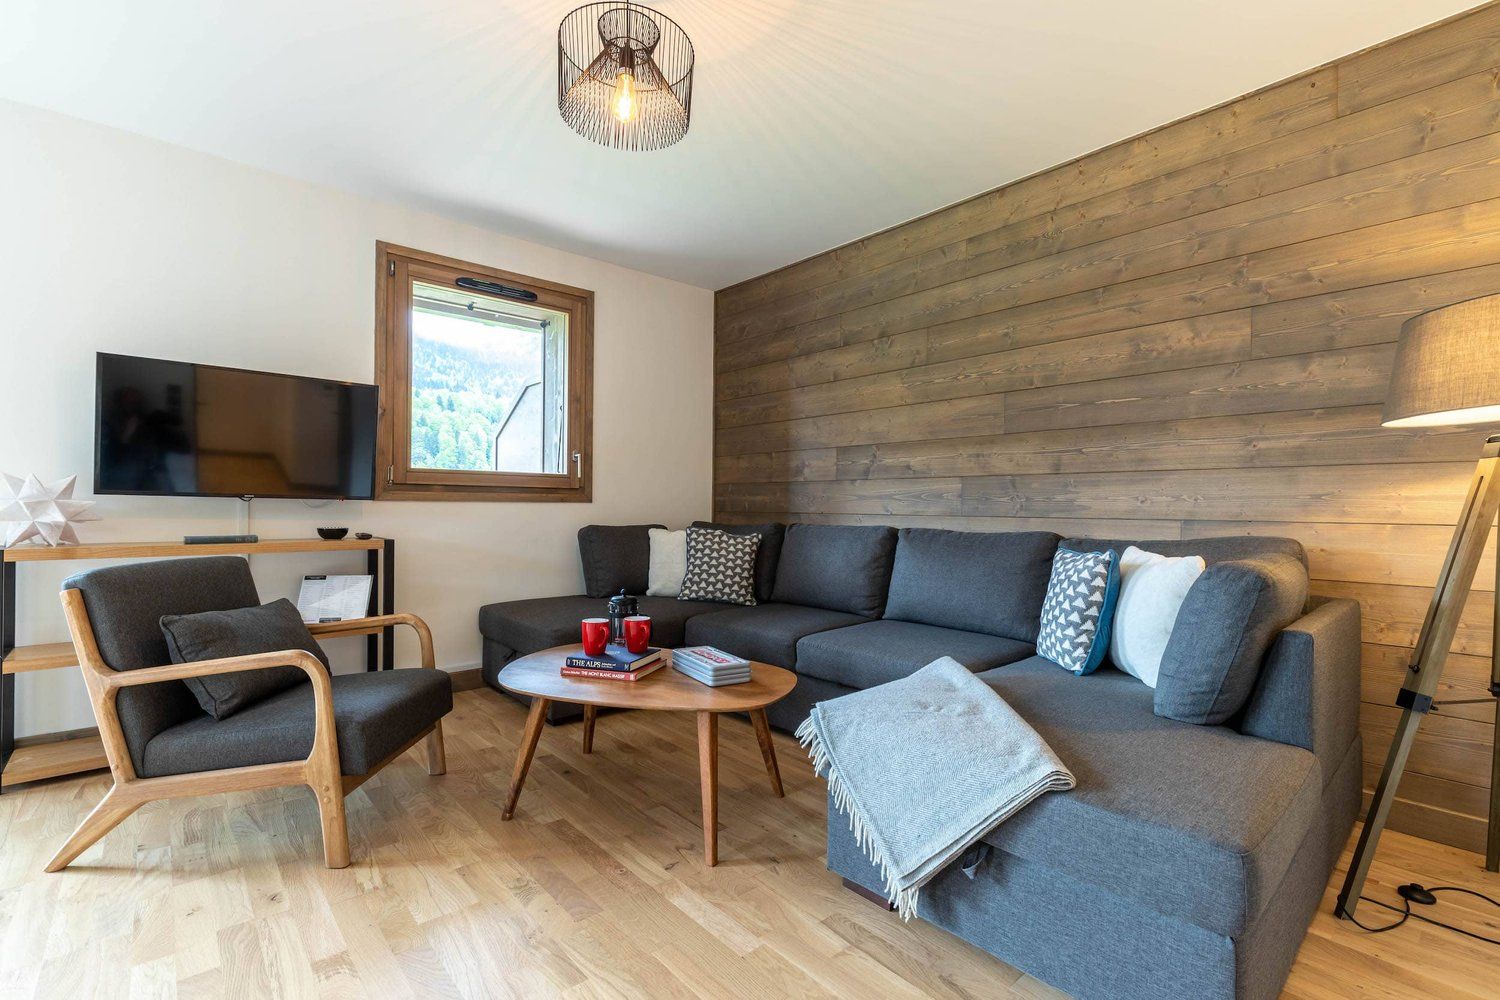 Appartement 3 chambres à vendre à Chamonix Mont Blanc, Alpes françaises